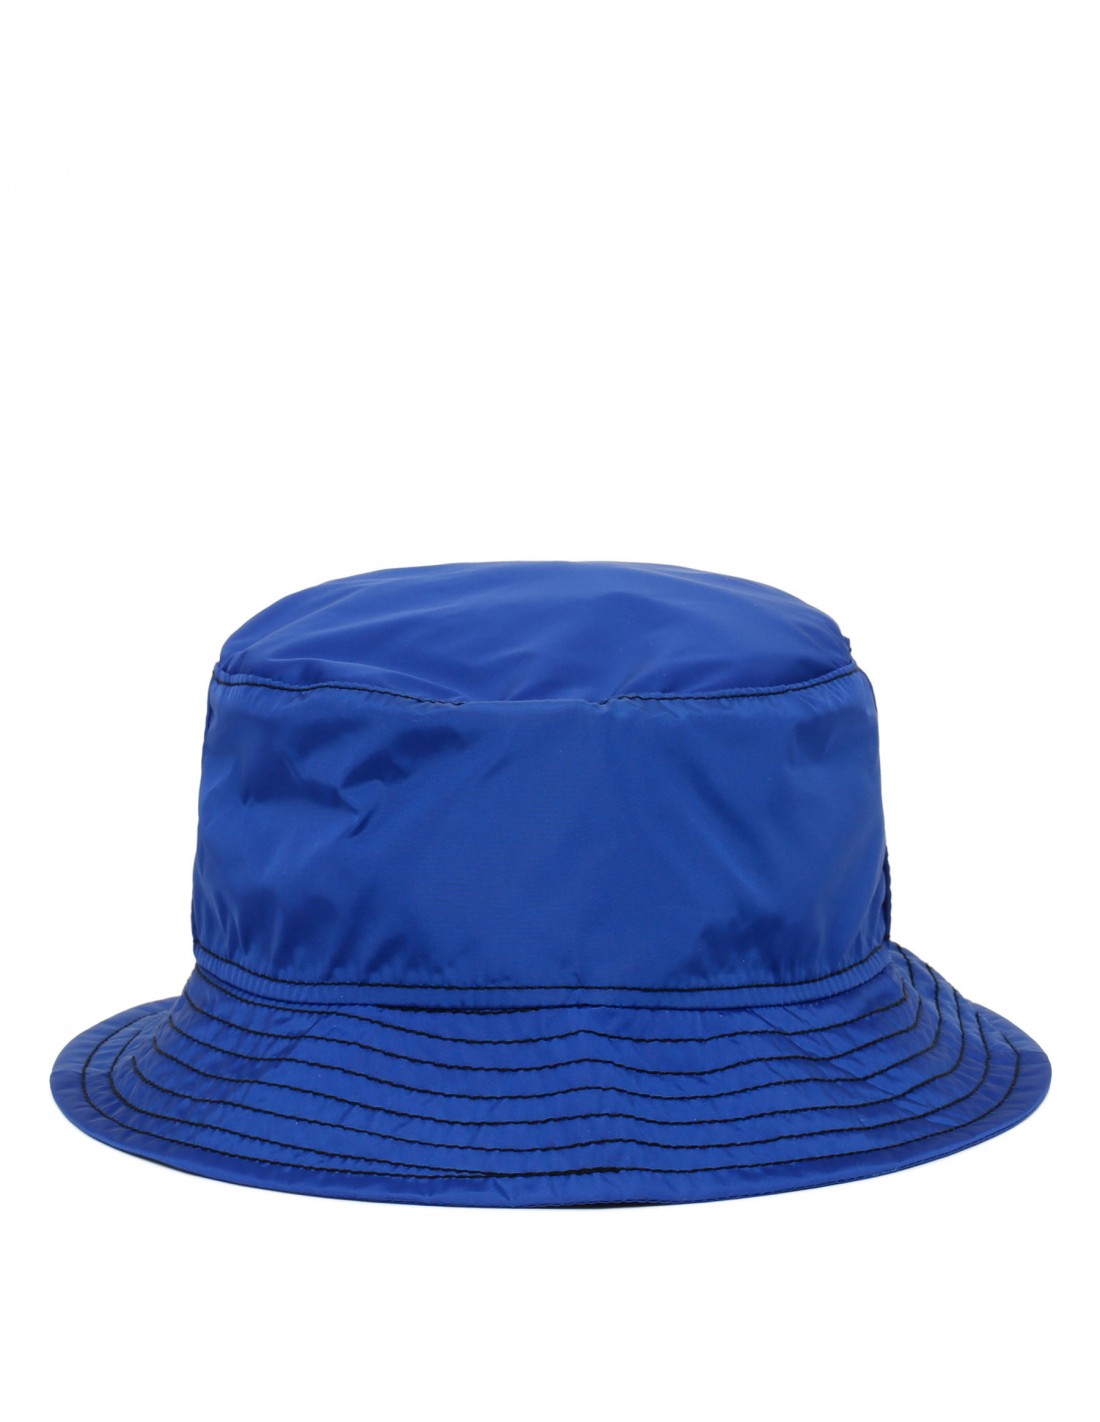 Jason nylon bucket hat